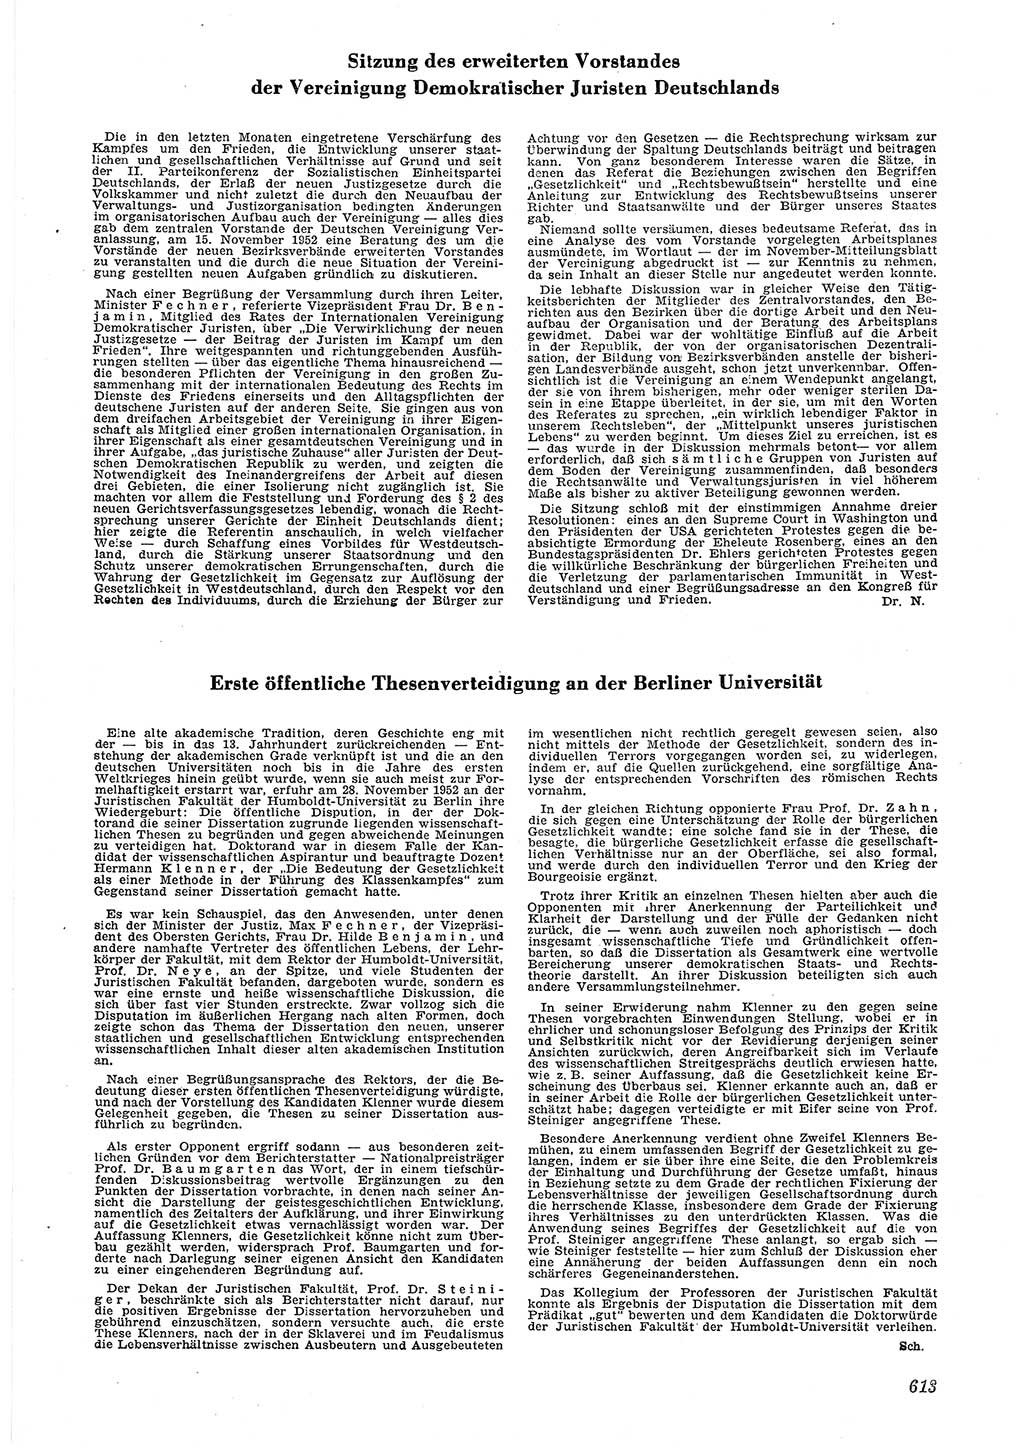 Neue Justiz (NJ), Zeitschrift für Recht und Rechtswissenschaft [Deutsche Demokratische Republik (DDR)], 6. Jahrgang 1952, Seite 613 (NJ DDR 1952, S. 613)